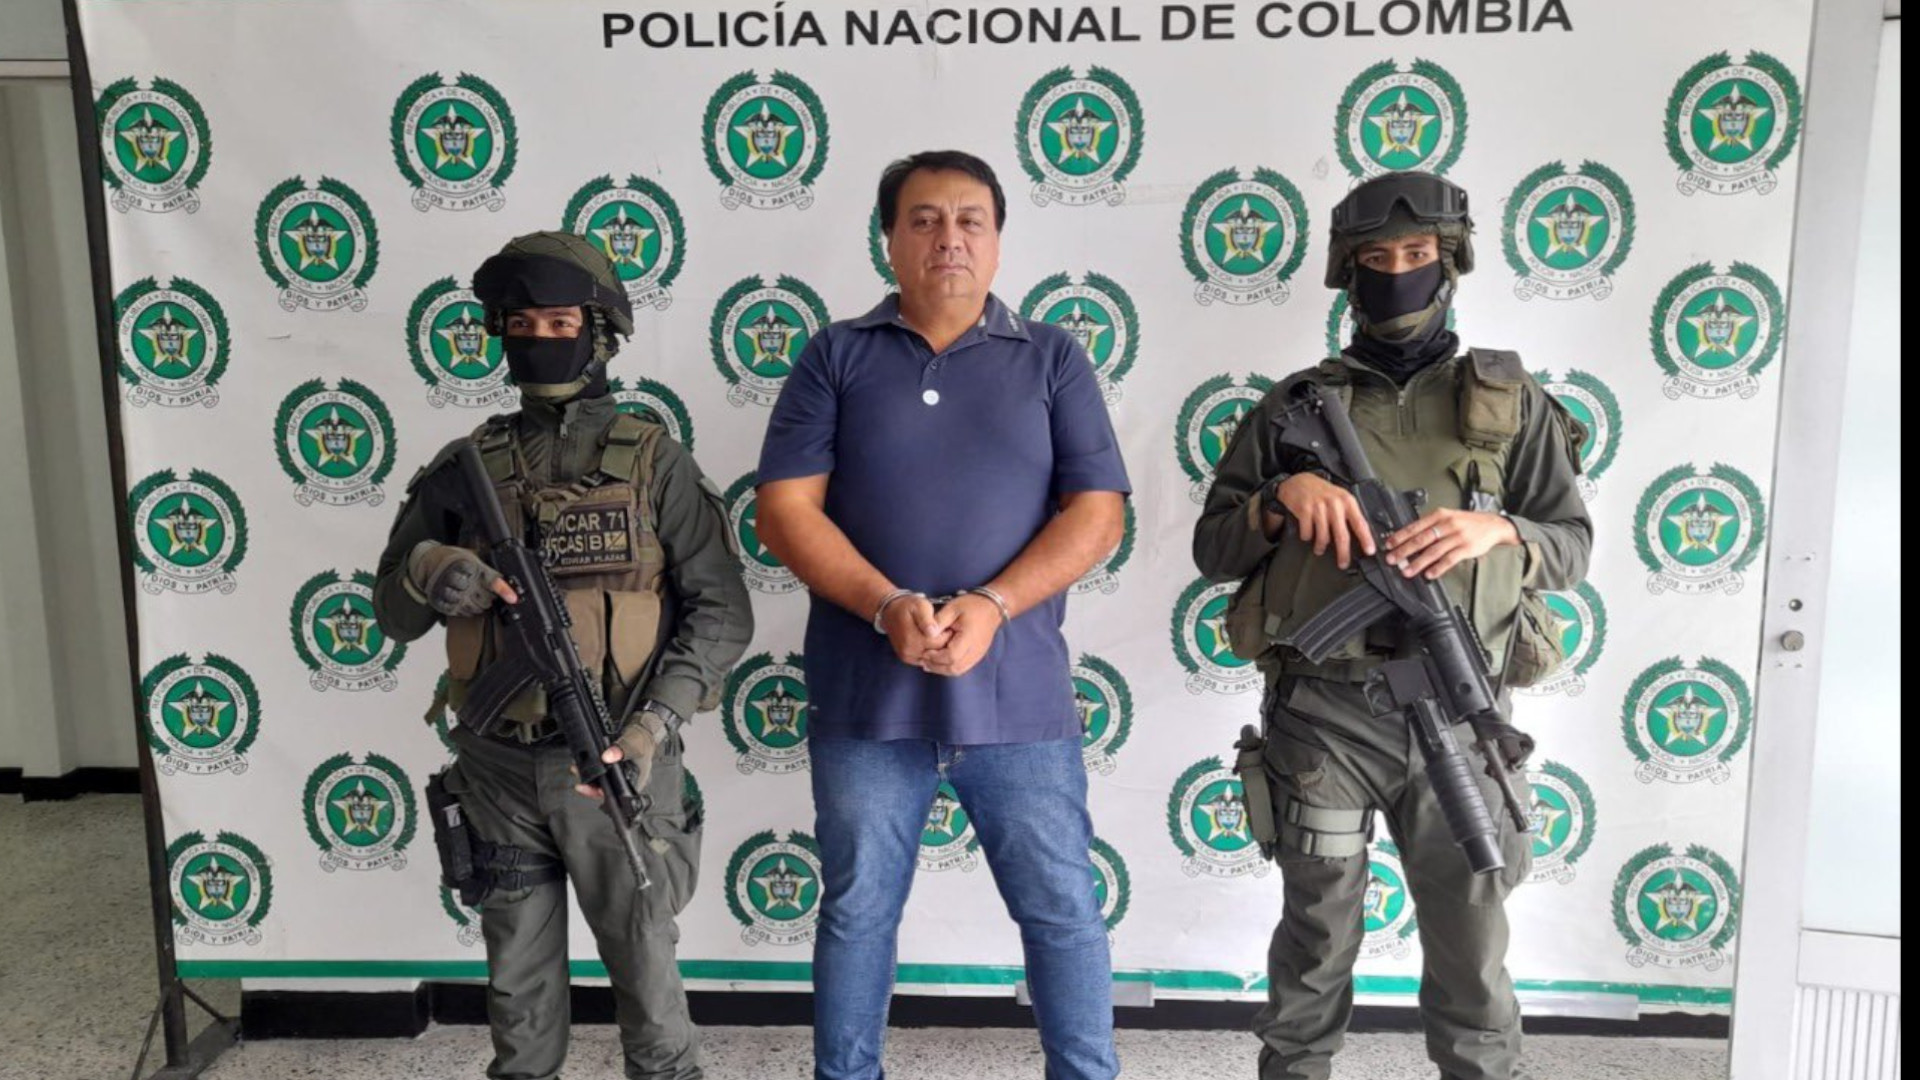 Juan Carlos López, alias Sobrino o El Grande, fue capturado por la policía al estar señalado de ser el jefe criminal de una red narcotraficante al servicio del Eln y el Cartel de Sinaloa de México. Foto: Policía Nacional de Colombia